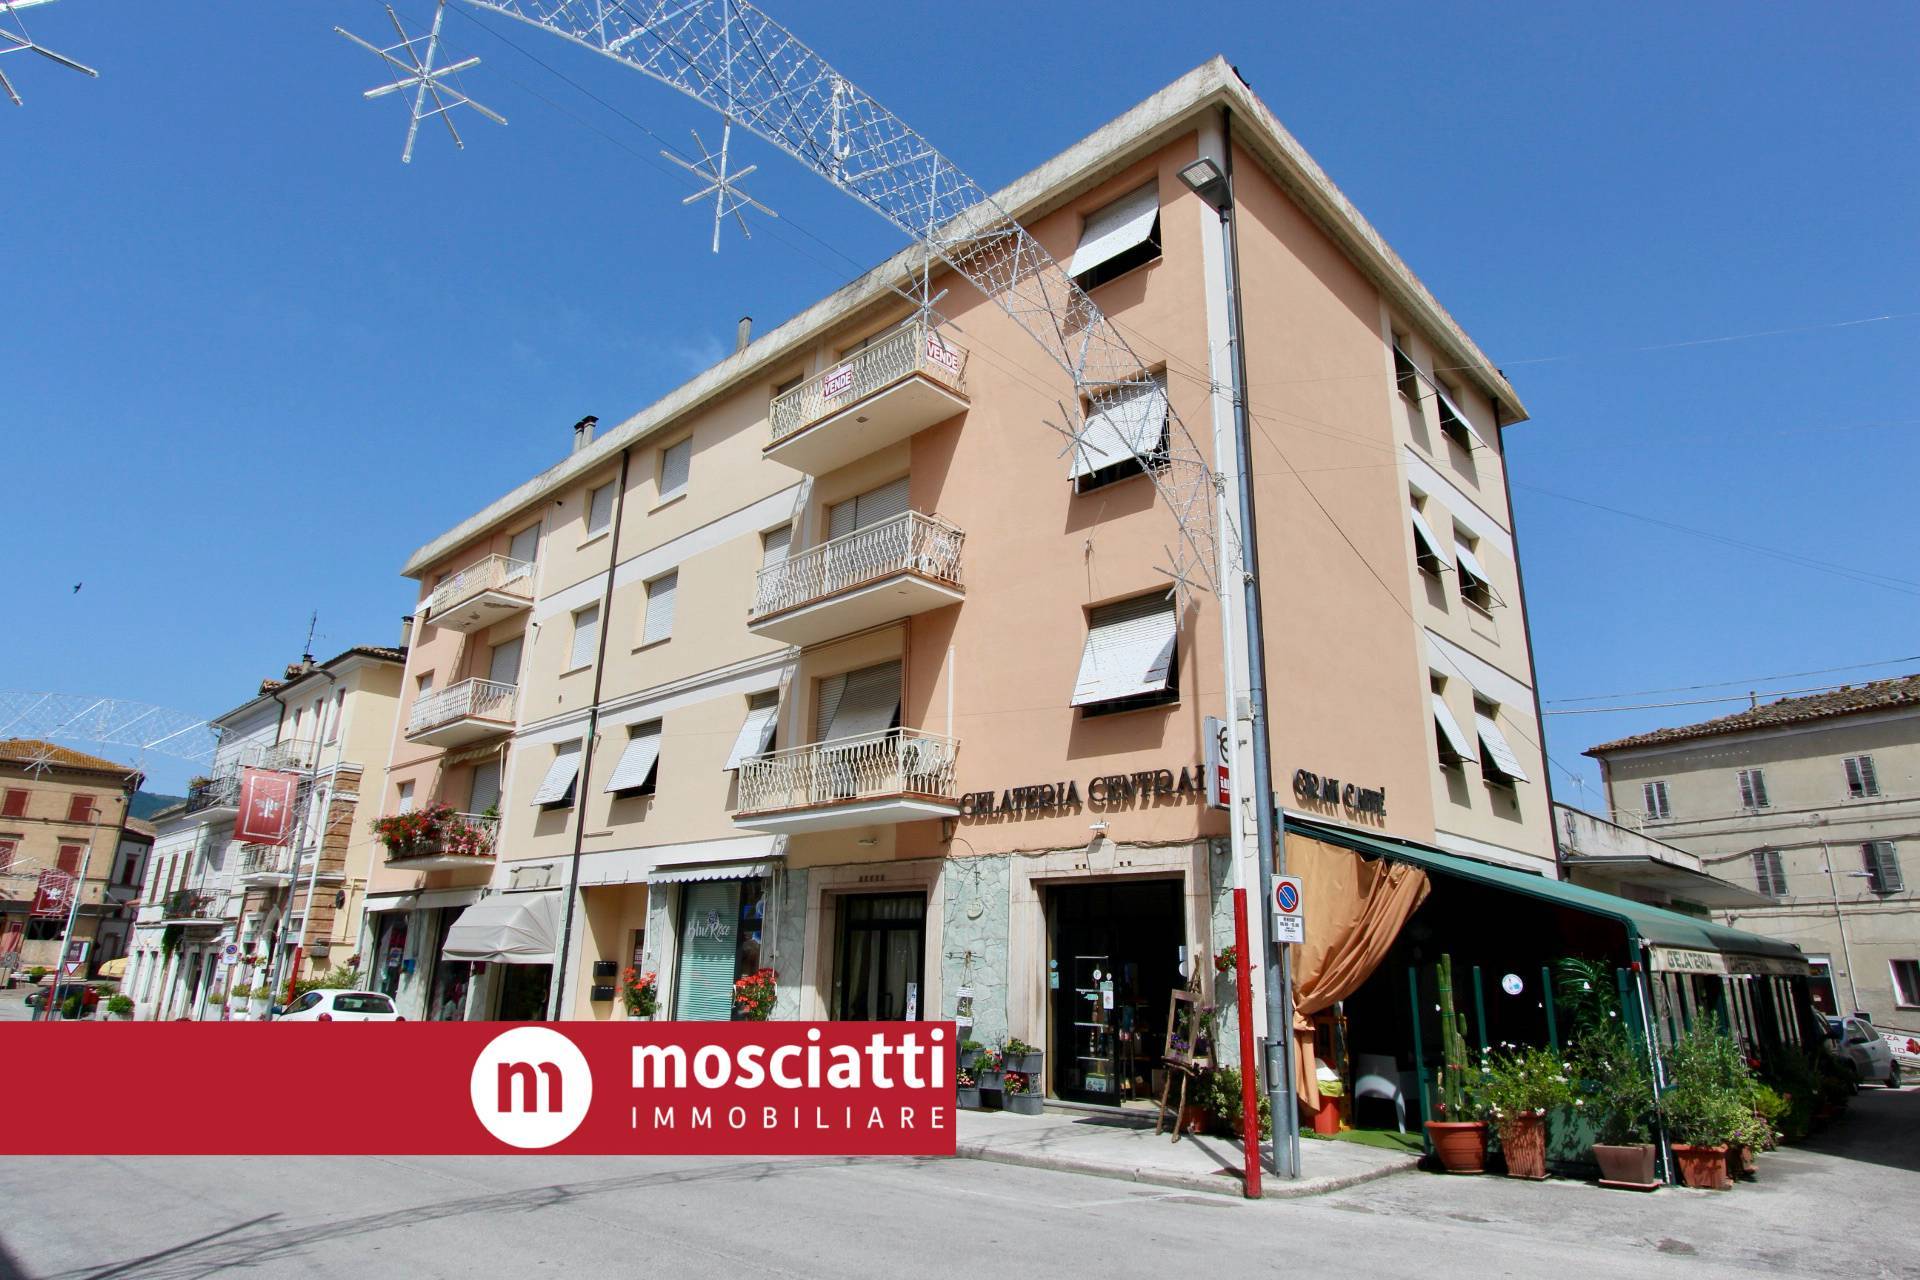 Appartamento in vendita a Castelraimondo, 2 locali, prezzo € 88.000 | PortaleAgenzieImmobiliari.it